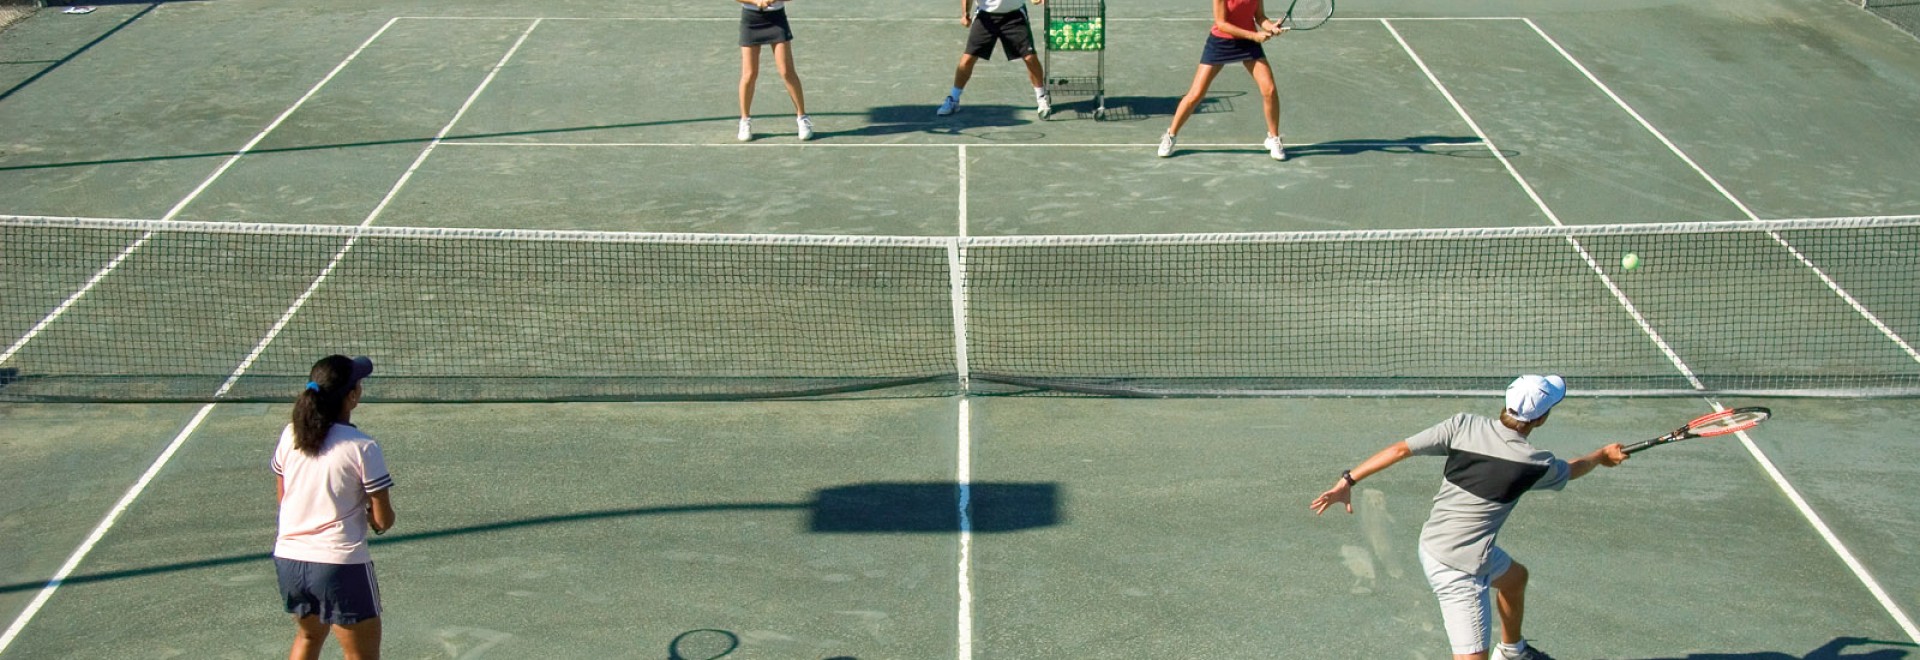 3 to 5 Day Adult Tennis Camp - Saddlebrook Resort, Florida